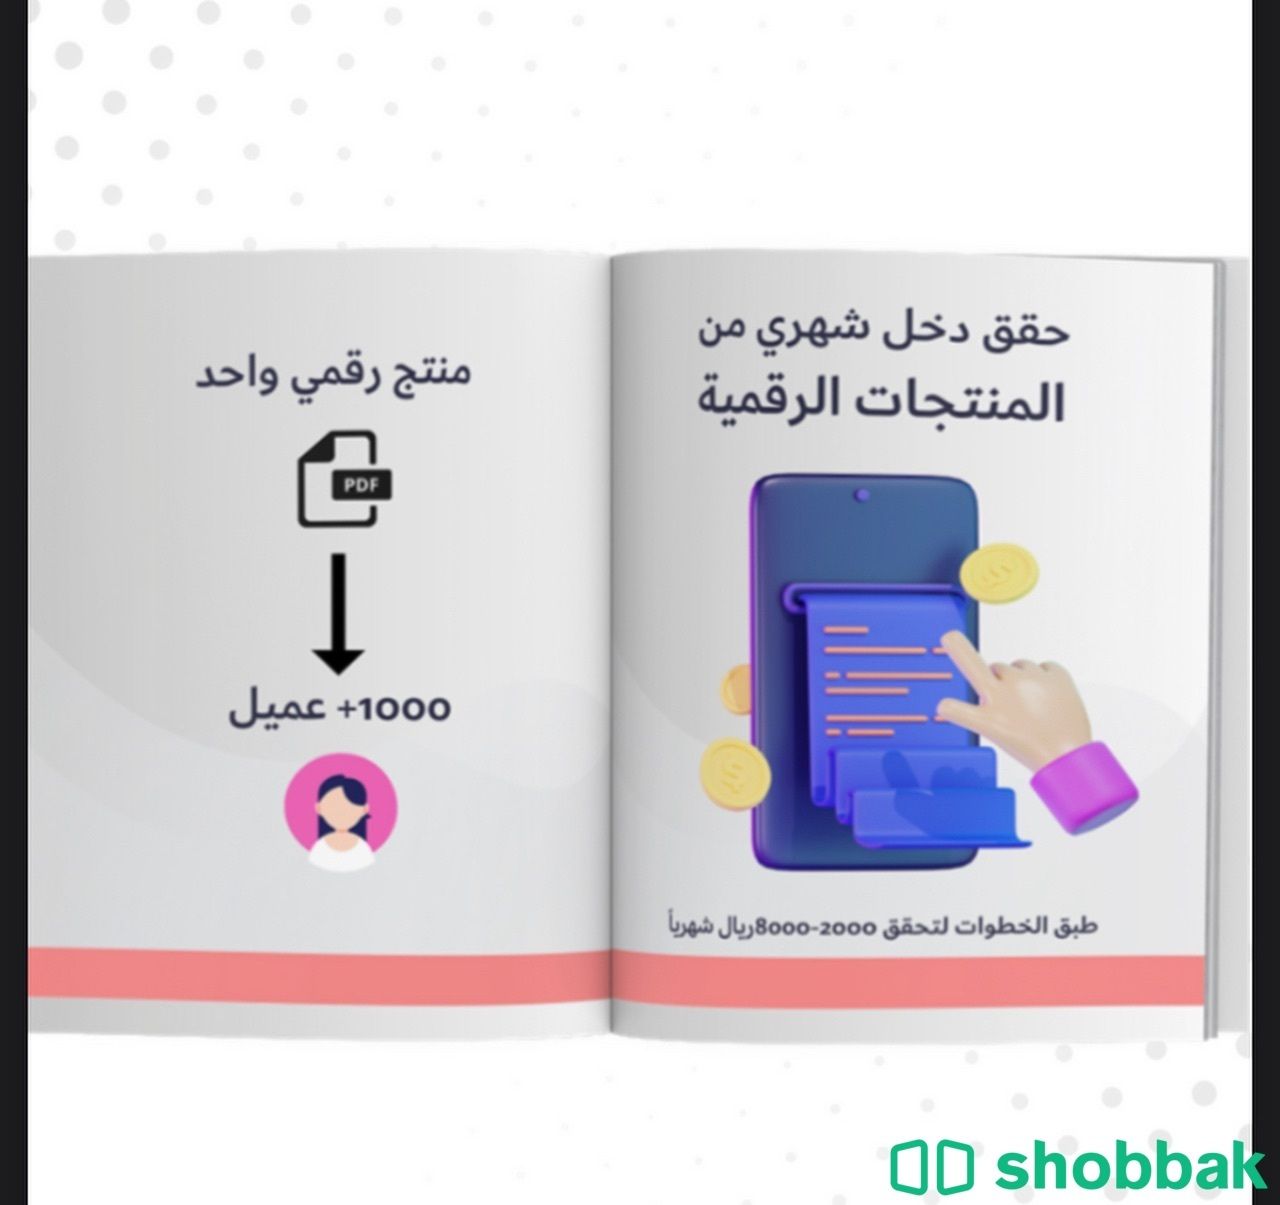 المنتجات رقمية مربحة Shobbak Saudi Arabia